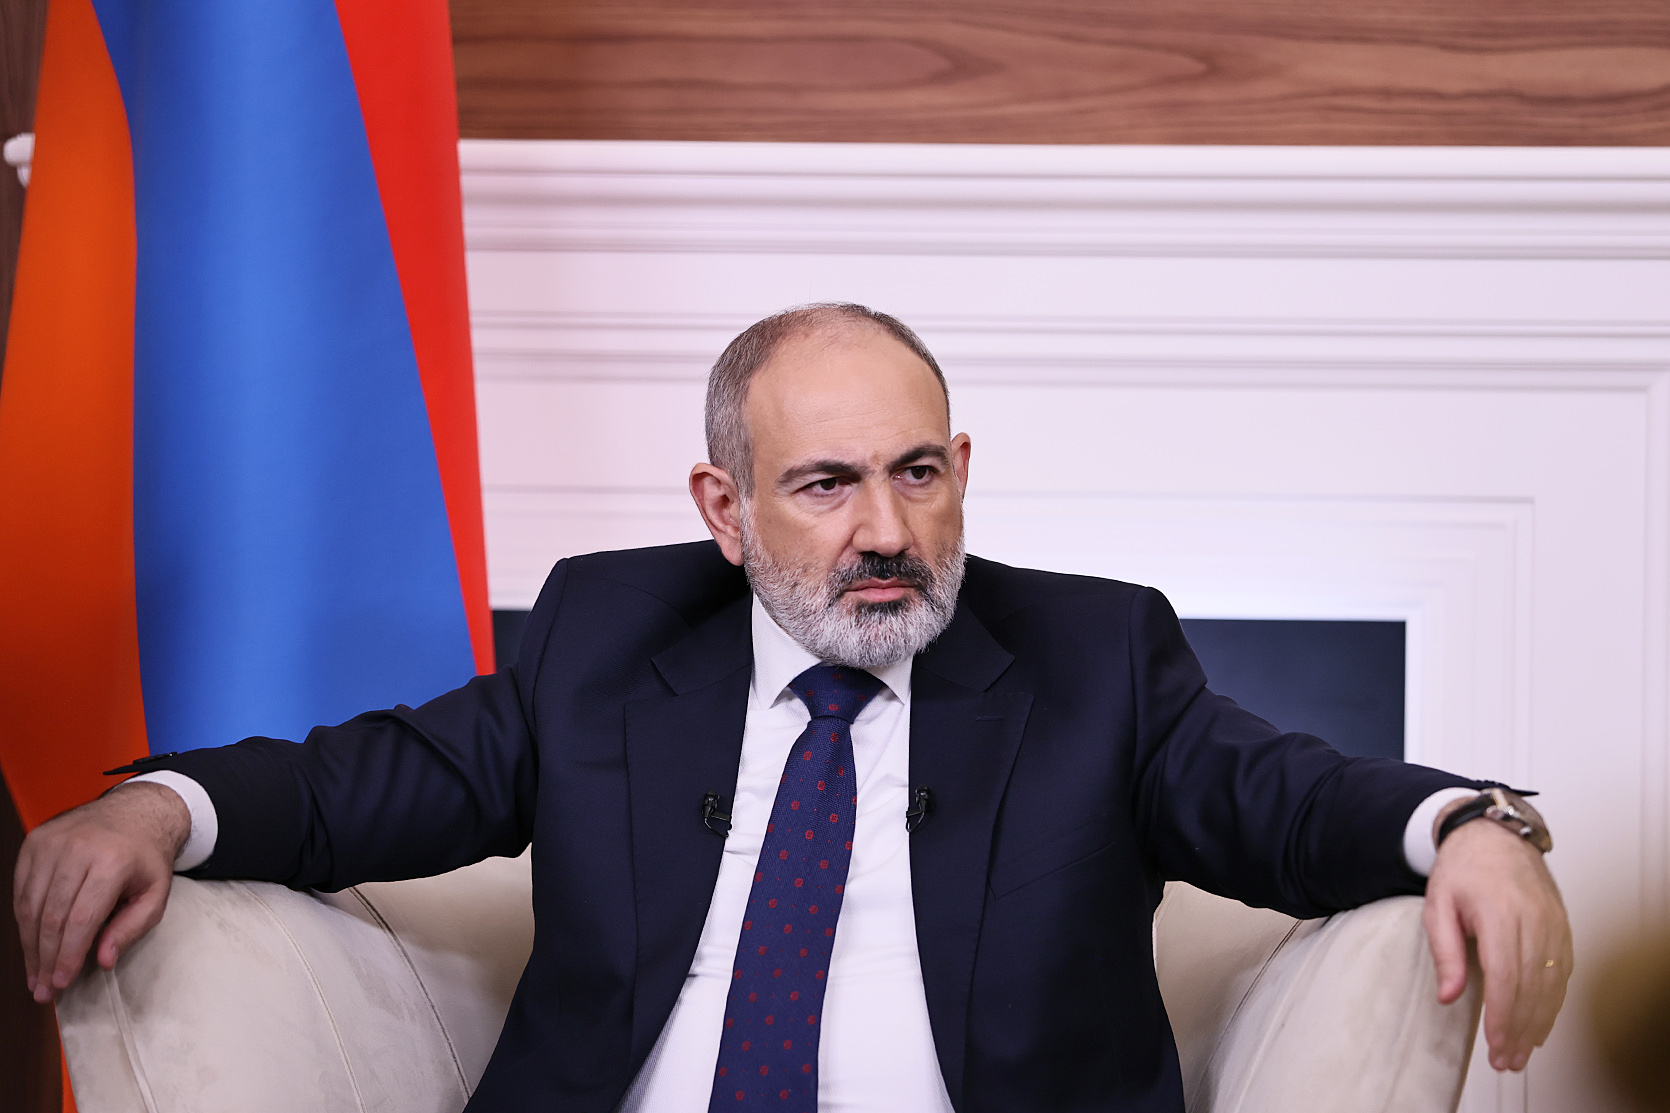 Հայաստանի և Ադրբեջանի միջև խաղաղության երեք հիմնարար սկզբունքներն արձանագրված են. Փաշինյանի հարցազրույցը՝ ամբողջությամբ